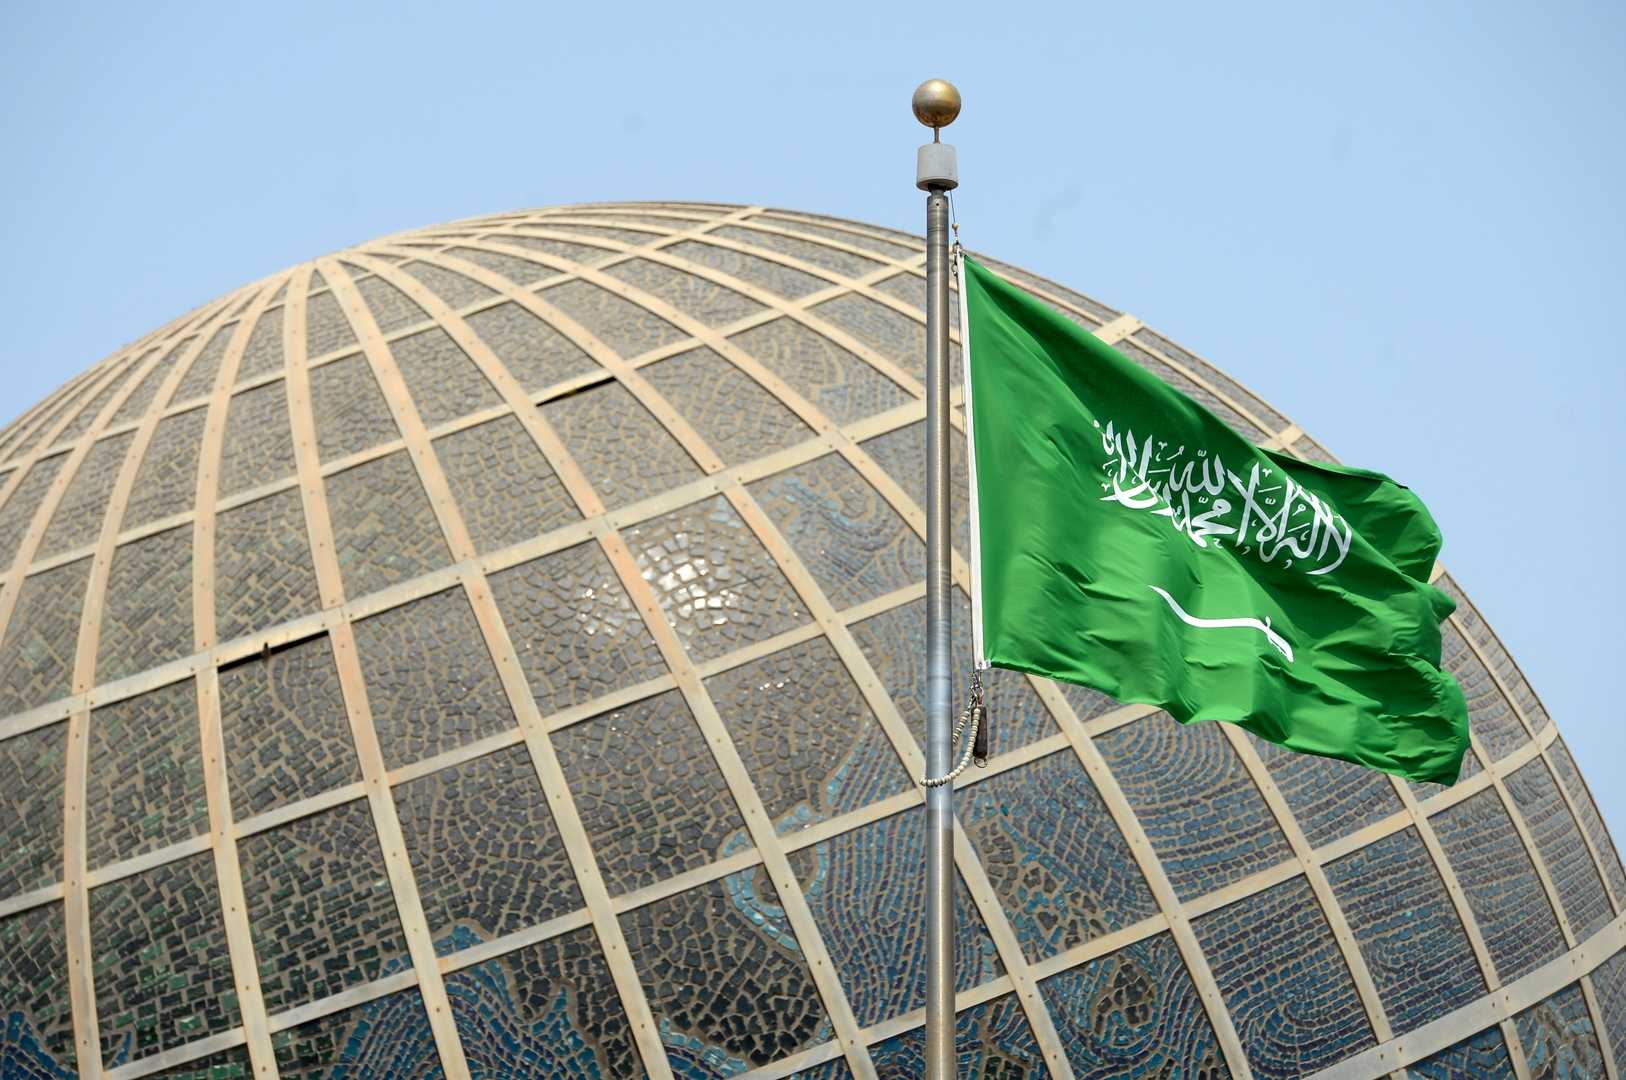 السعودية تصدر بيانا بشأن اقتحام بن غفير للمسجد الأقصى وتصويت الكنيست ضد قيام دولة فلسطين